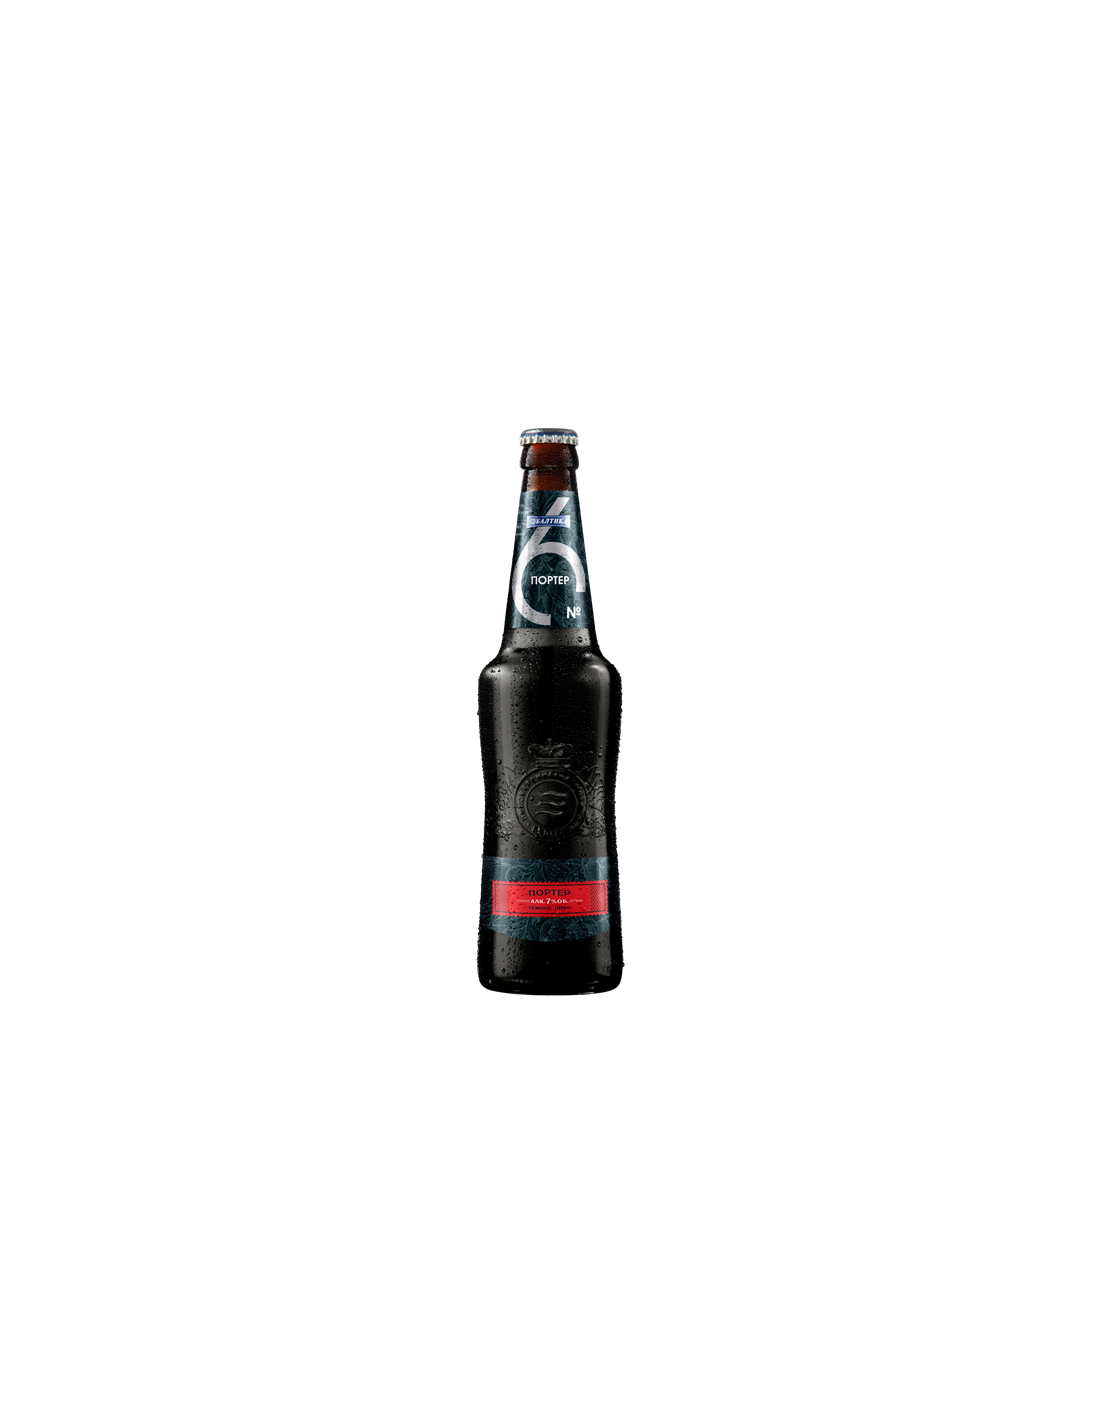 Bere neagra, filtrata Baltika 6 Porter, 7% alc., 0.47L, Rusia alcooldiscount.ro